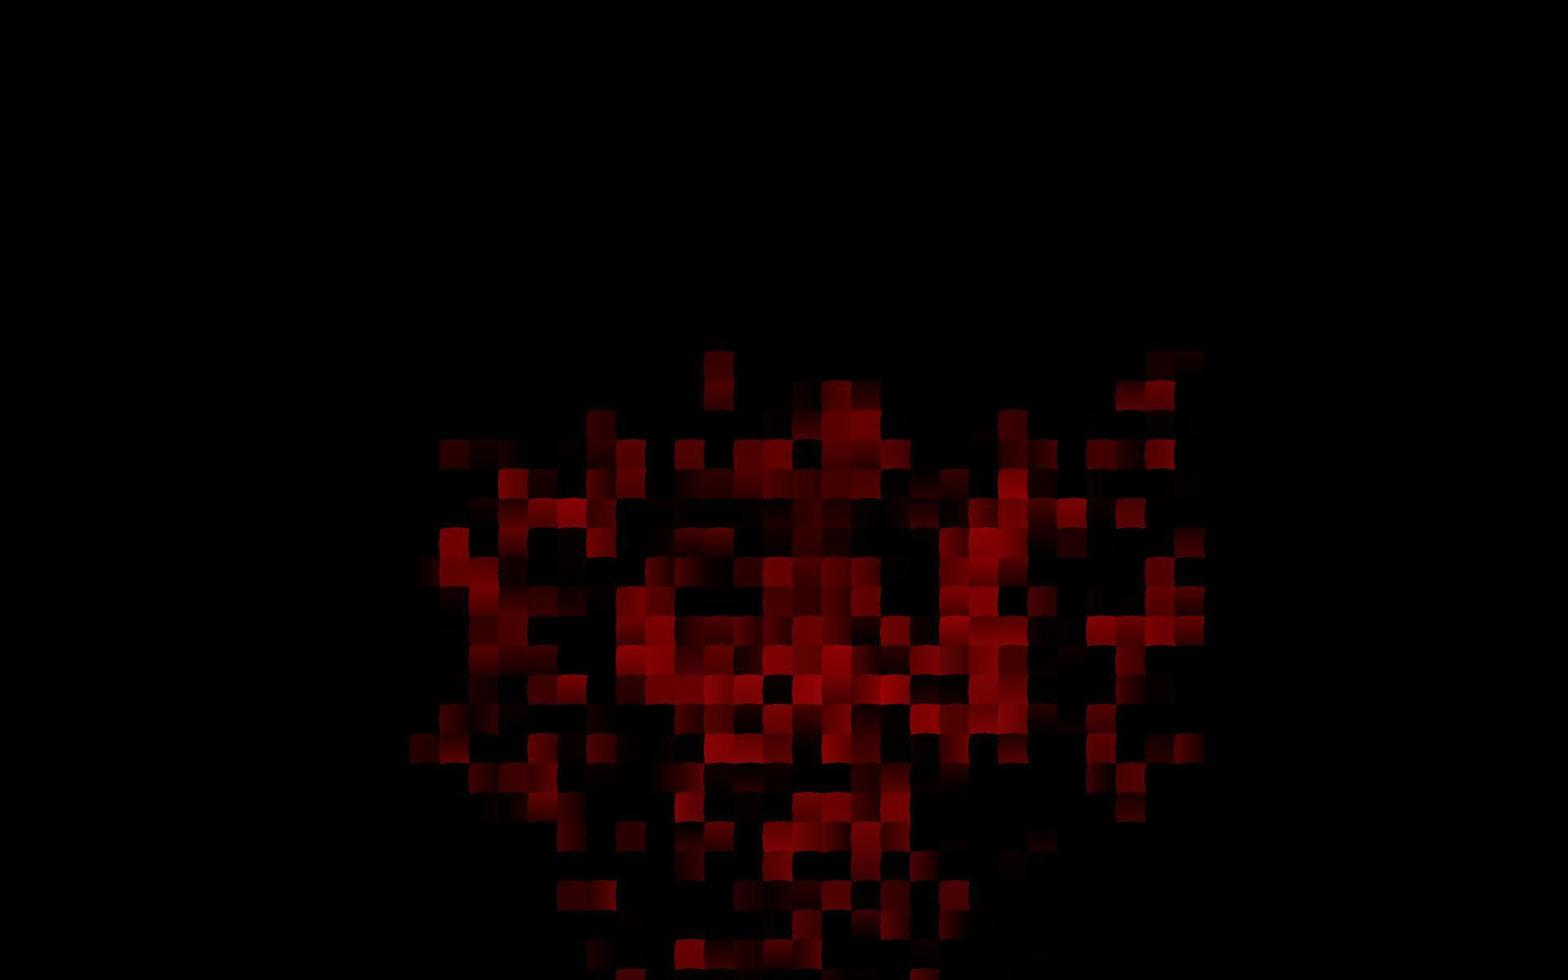 Fondo de vector rojo oscuro con rectángulos.